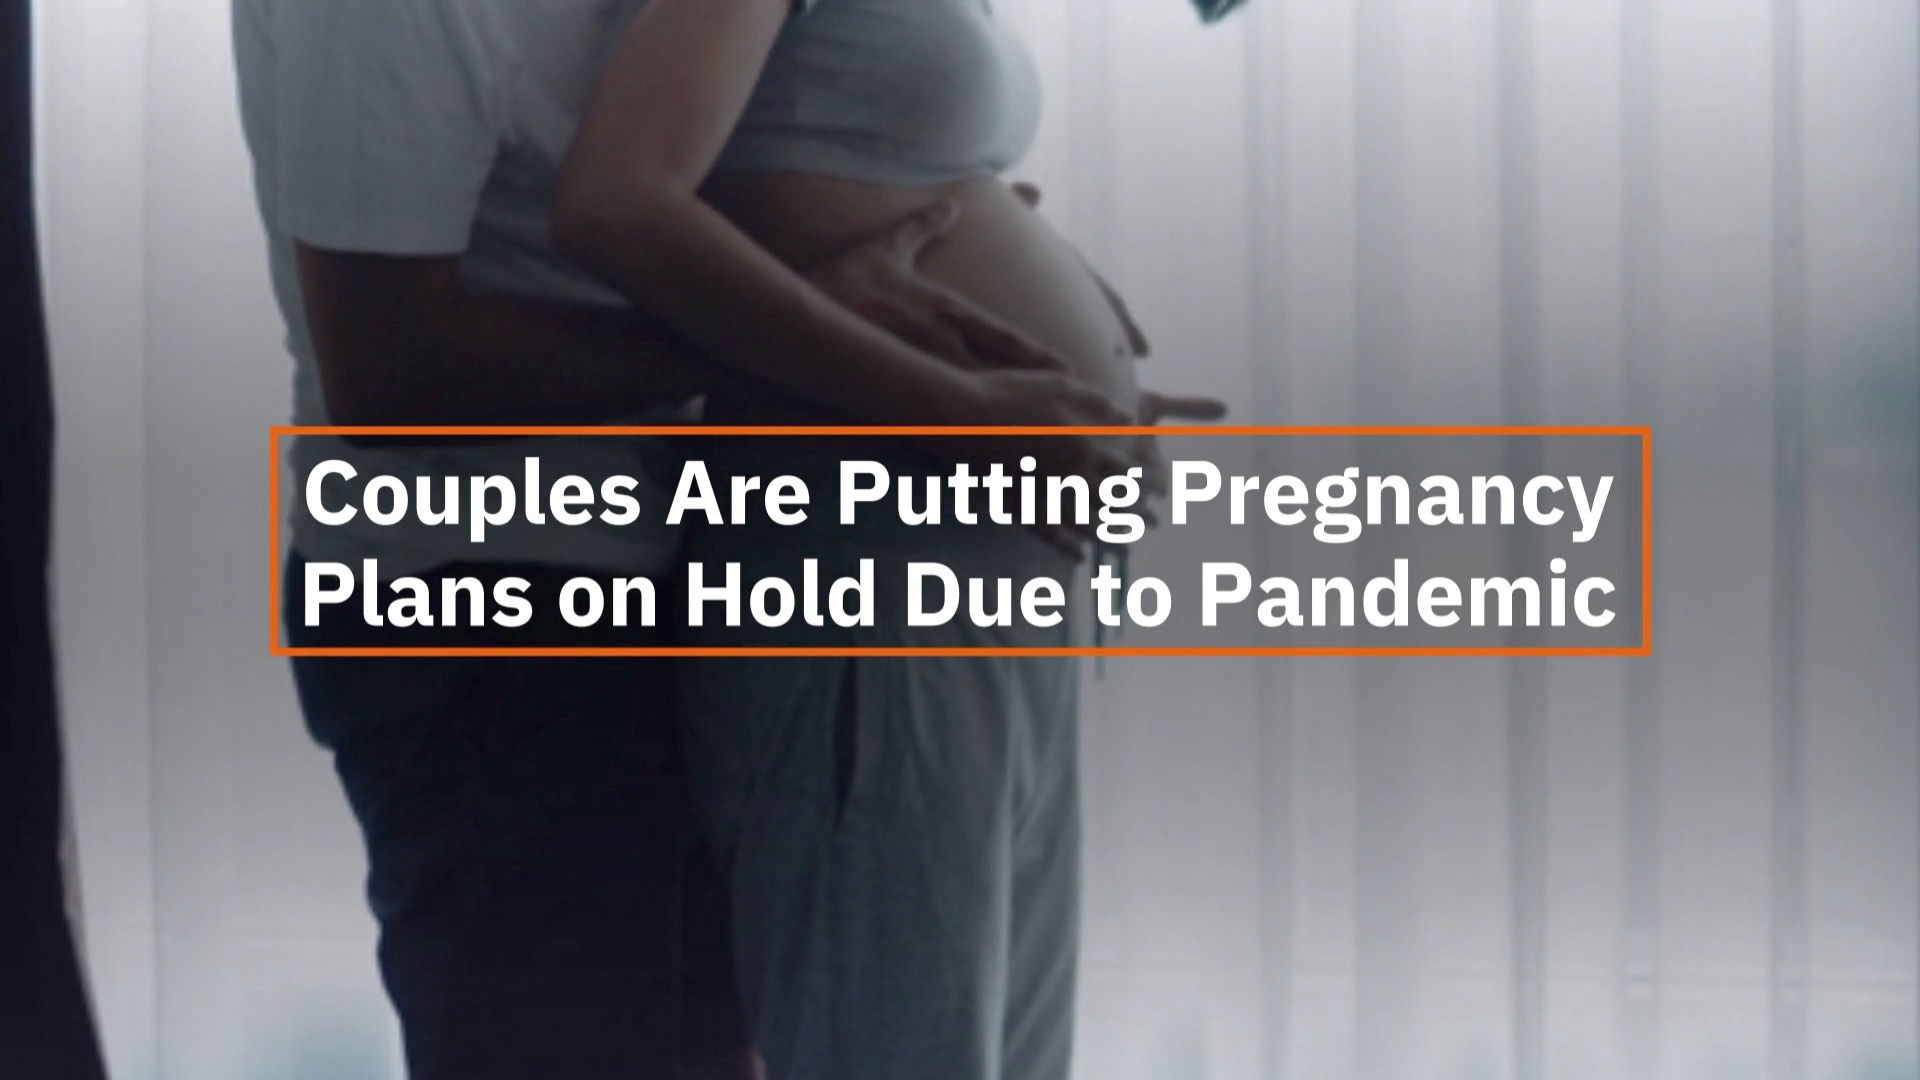 A Pregnant Pandemic